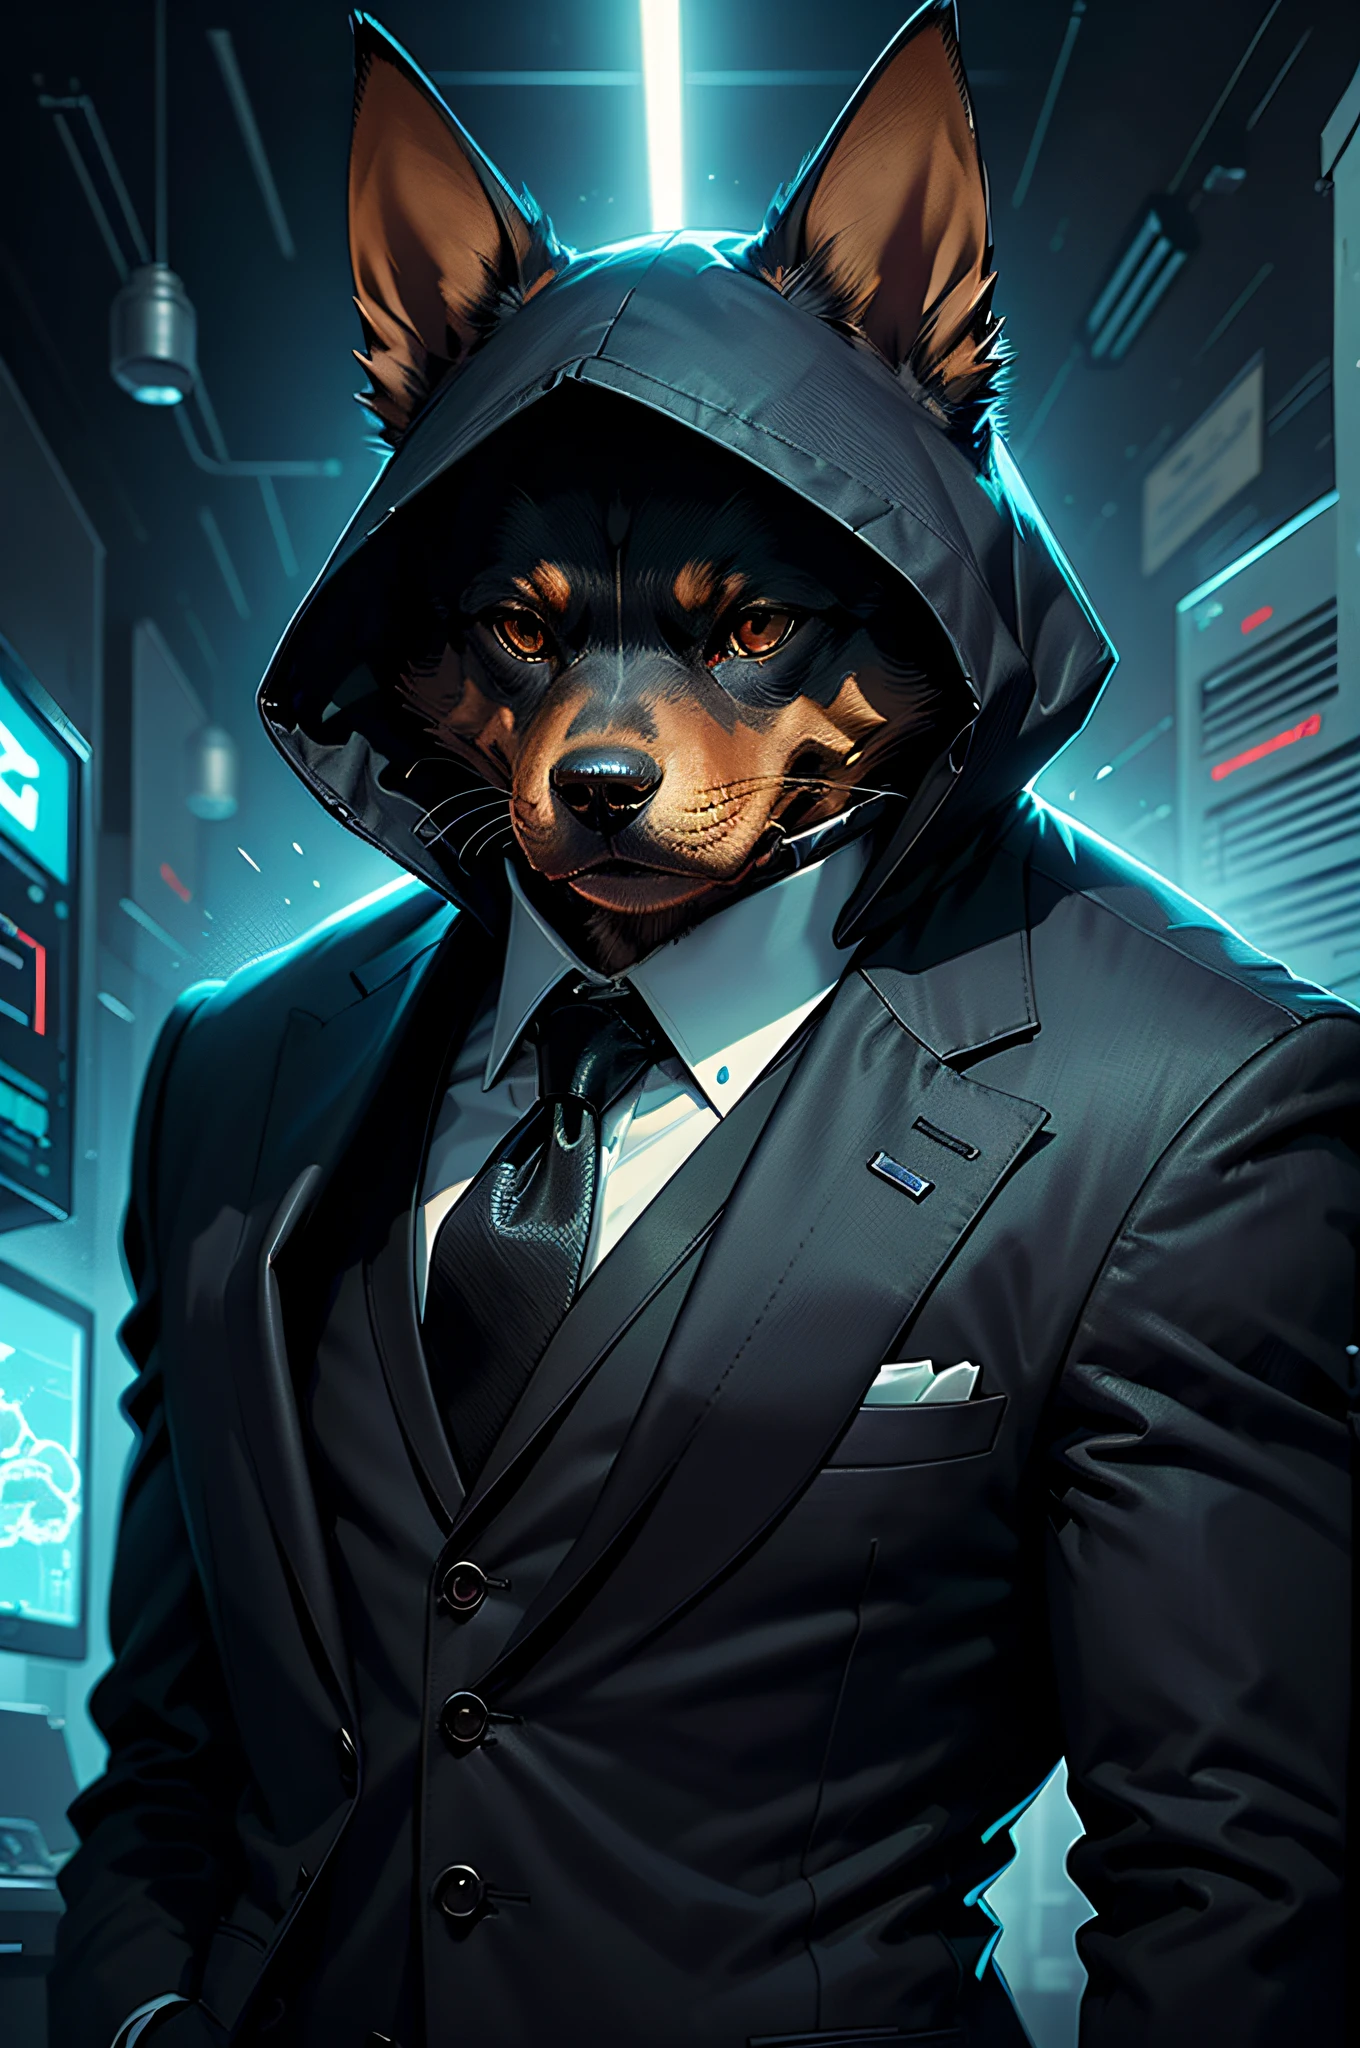 (검은 양복과 넥타이를 입은 남자)만화책、의인화된 도베르만 개、사이버 펑크